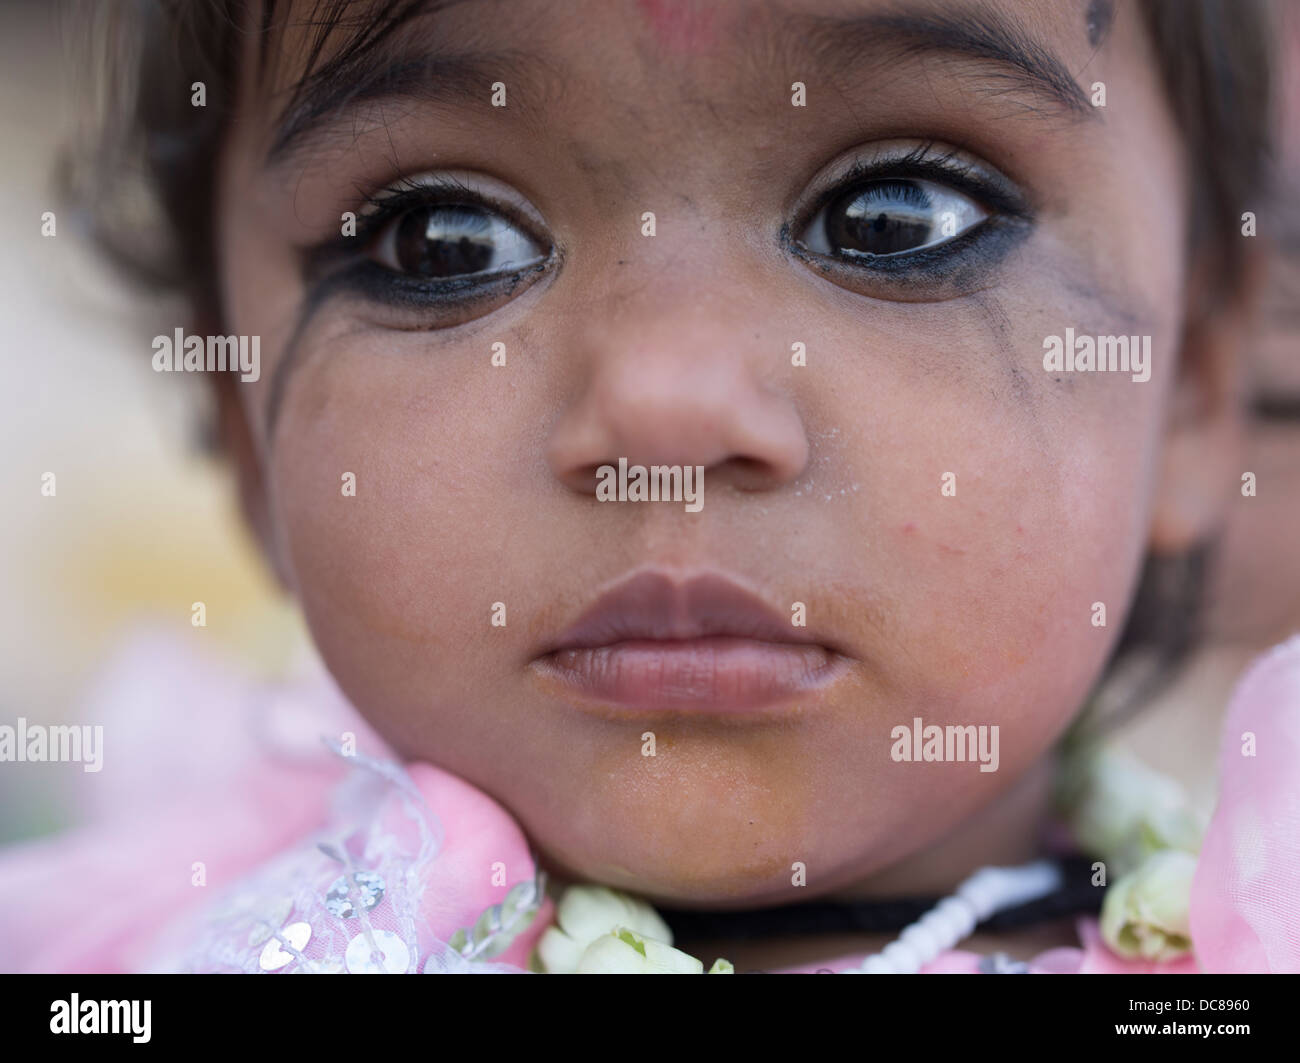 Giovane ragazza indiana indossando pesanti eventualmente eyeliner Kohl realizzato da galena (solfuro di piombo / solfuro) Foto Stock